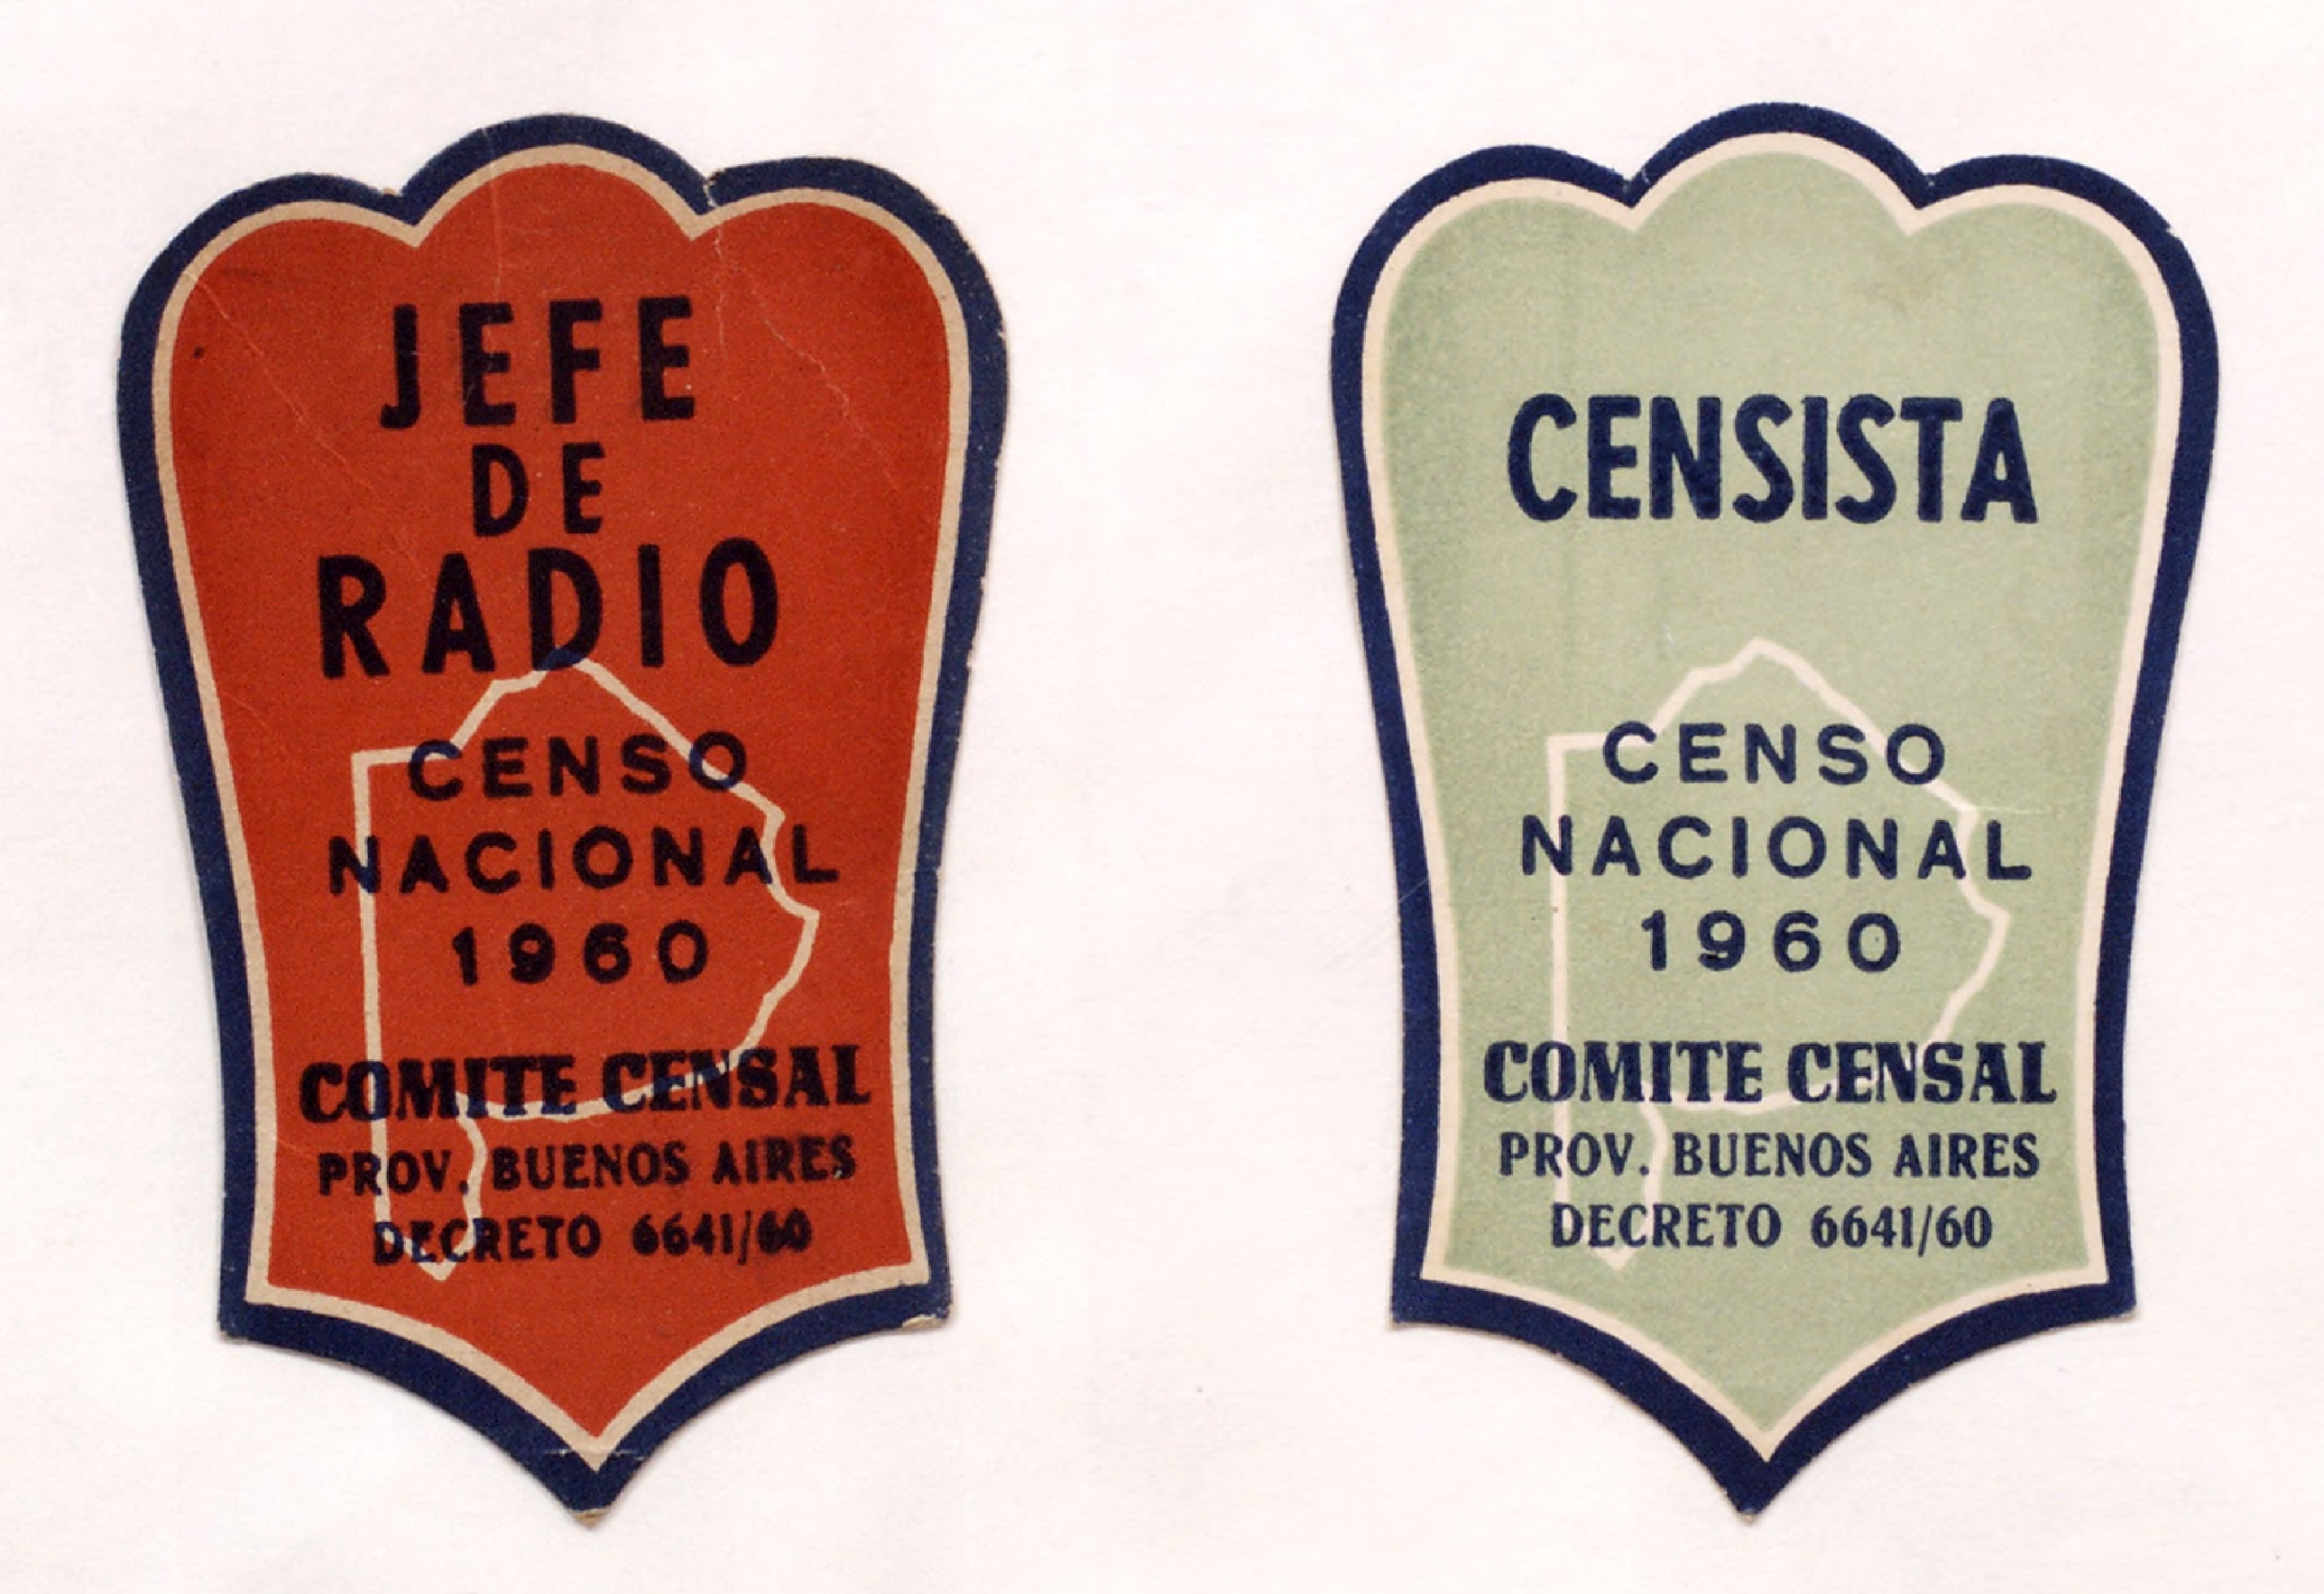 Identificaciones del personal del censo de 1960. Fuente: Indec